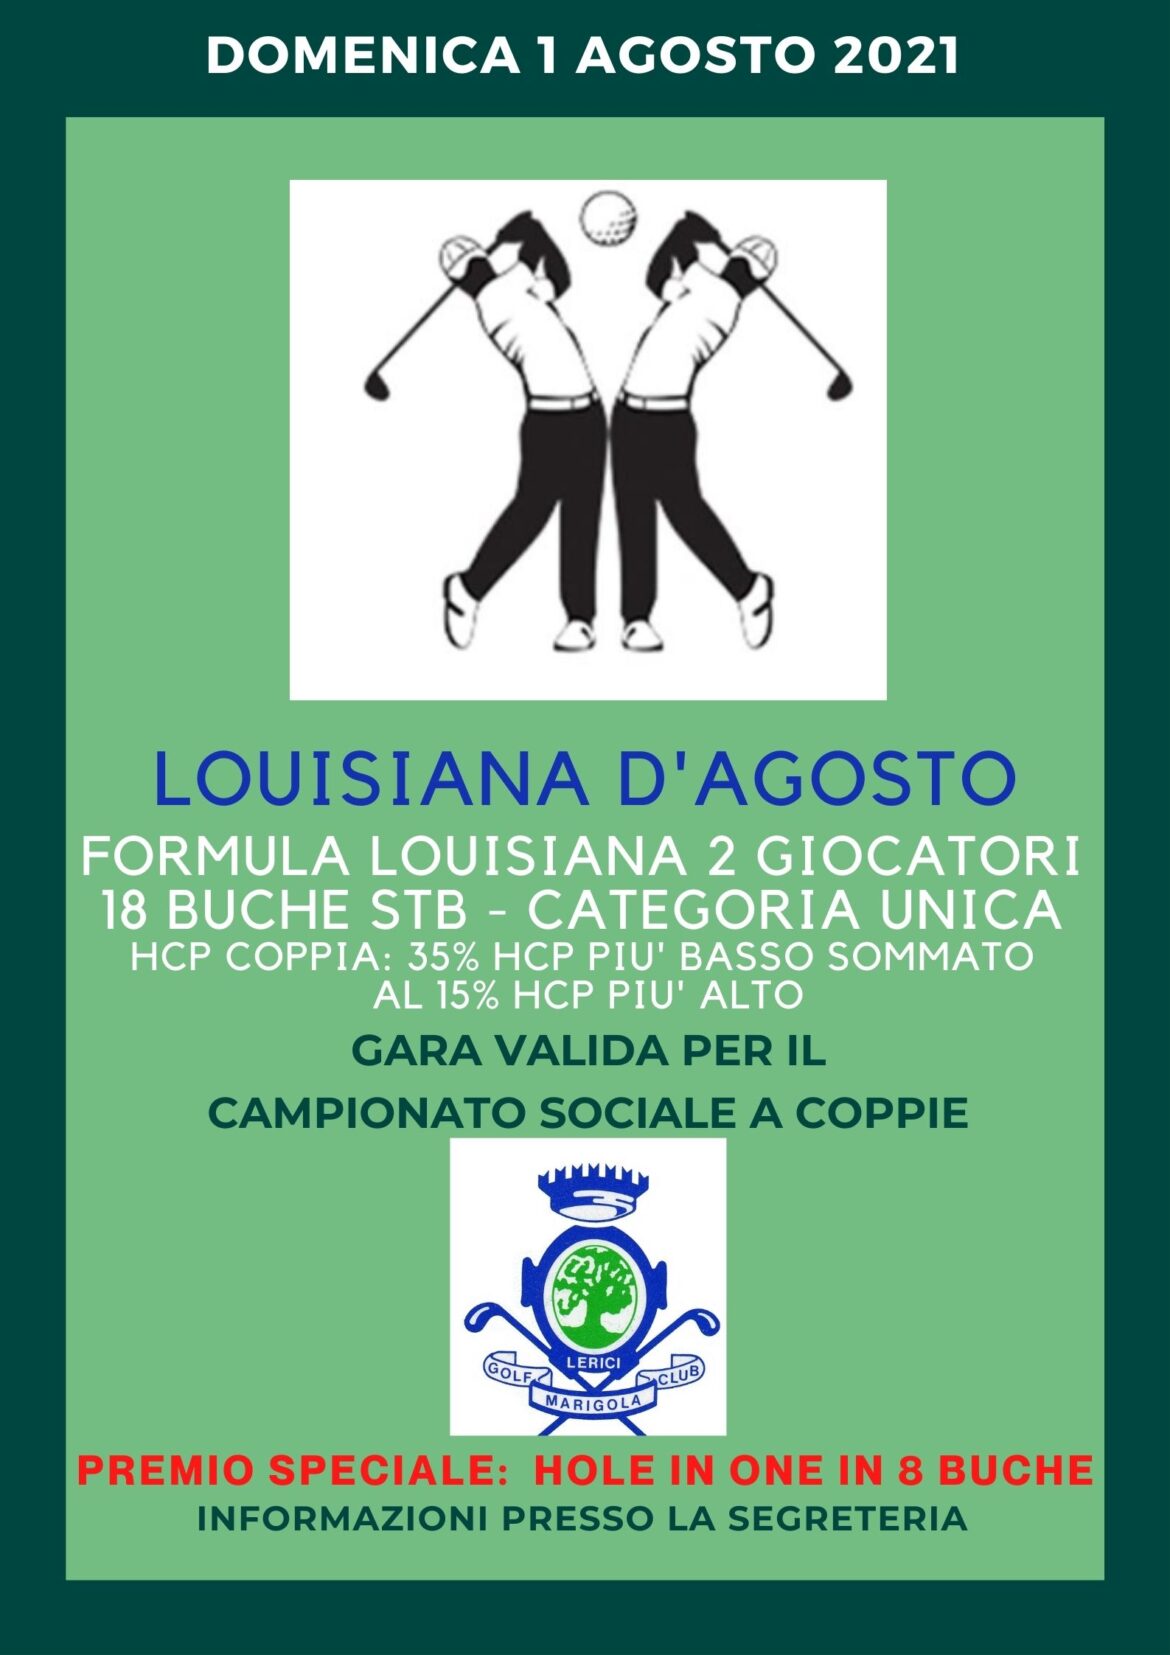 LOUISIANA D’AGOSTO – Campionato sociale a COPPIE